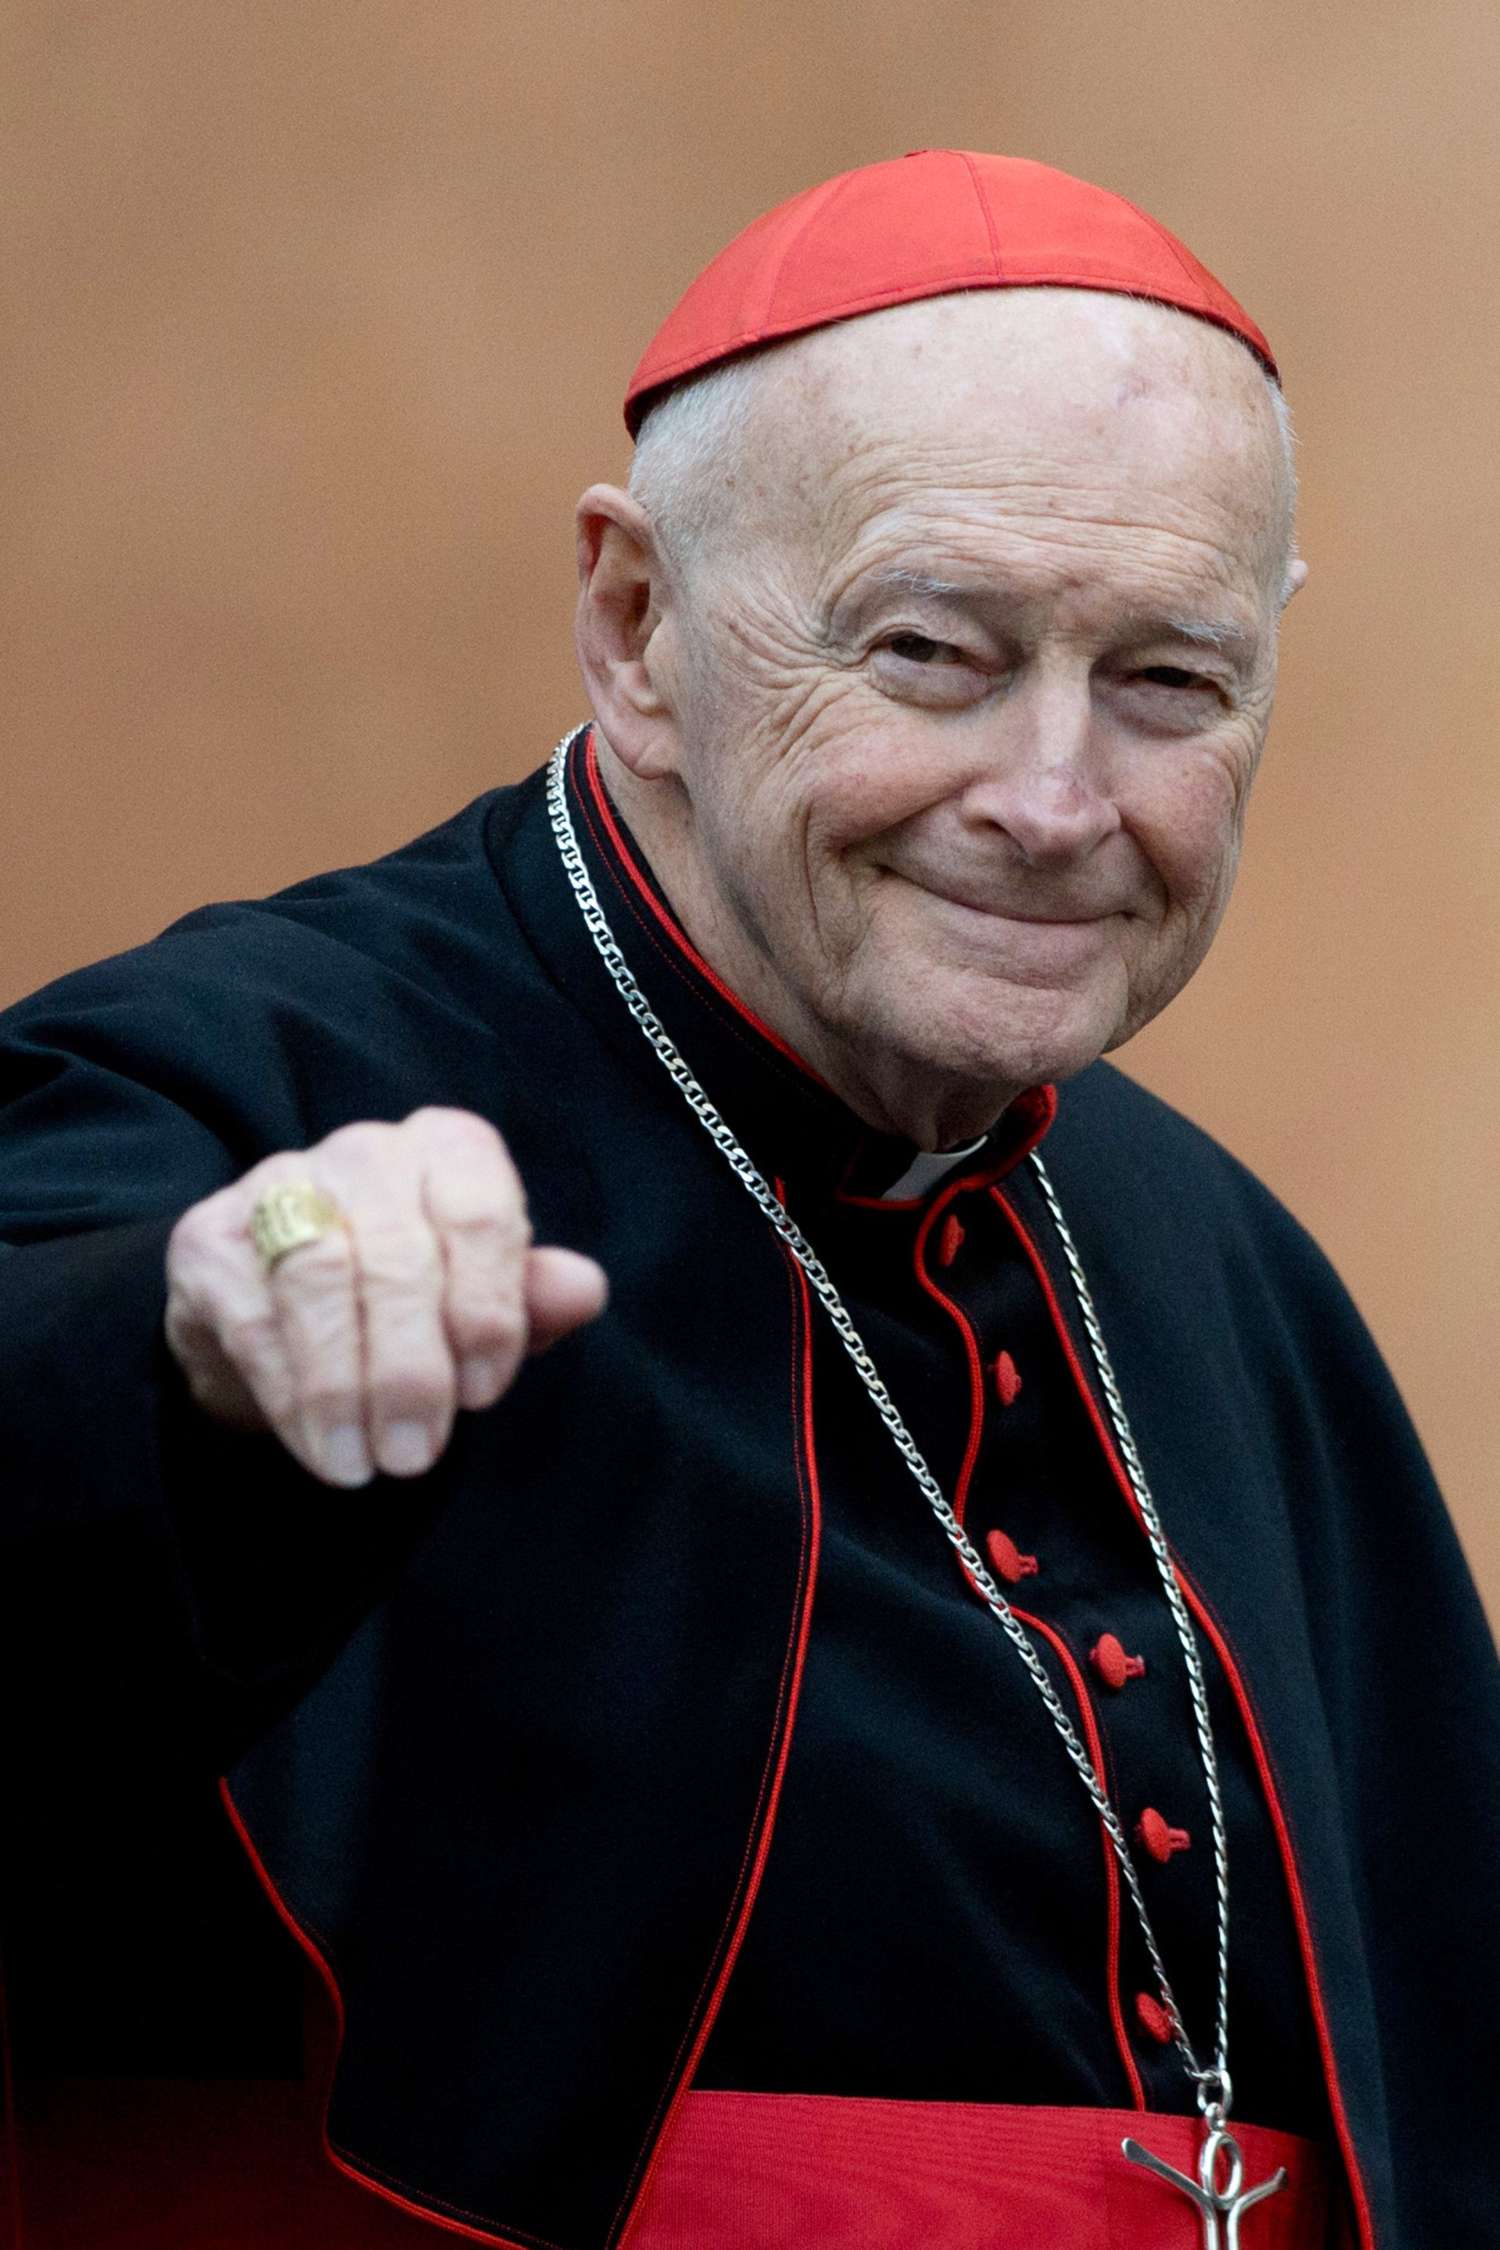 El Papa aceptó la renuncia del cardenal McCarrick, acusado de abuso sexual